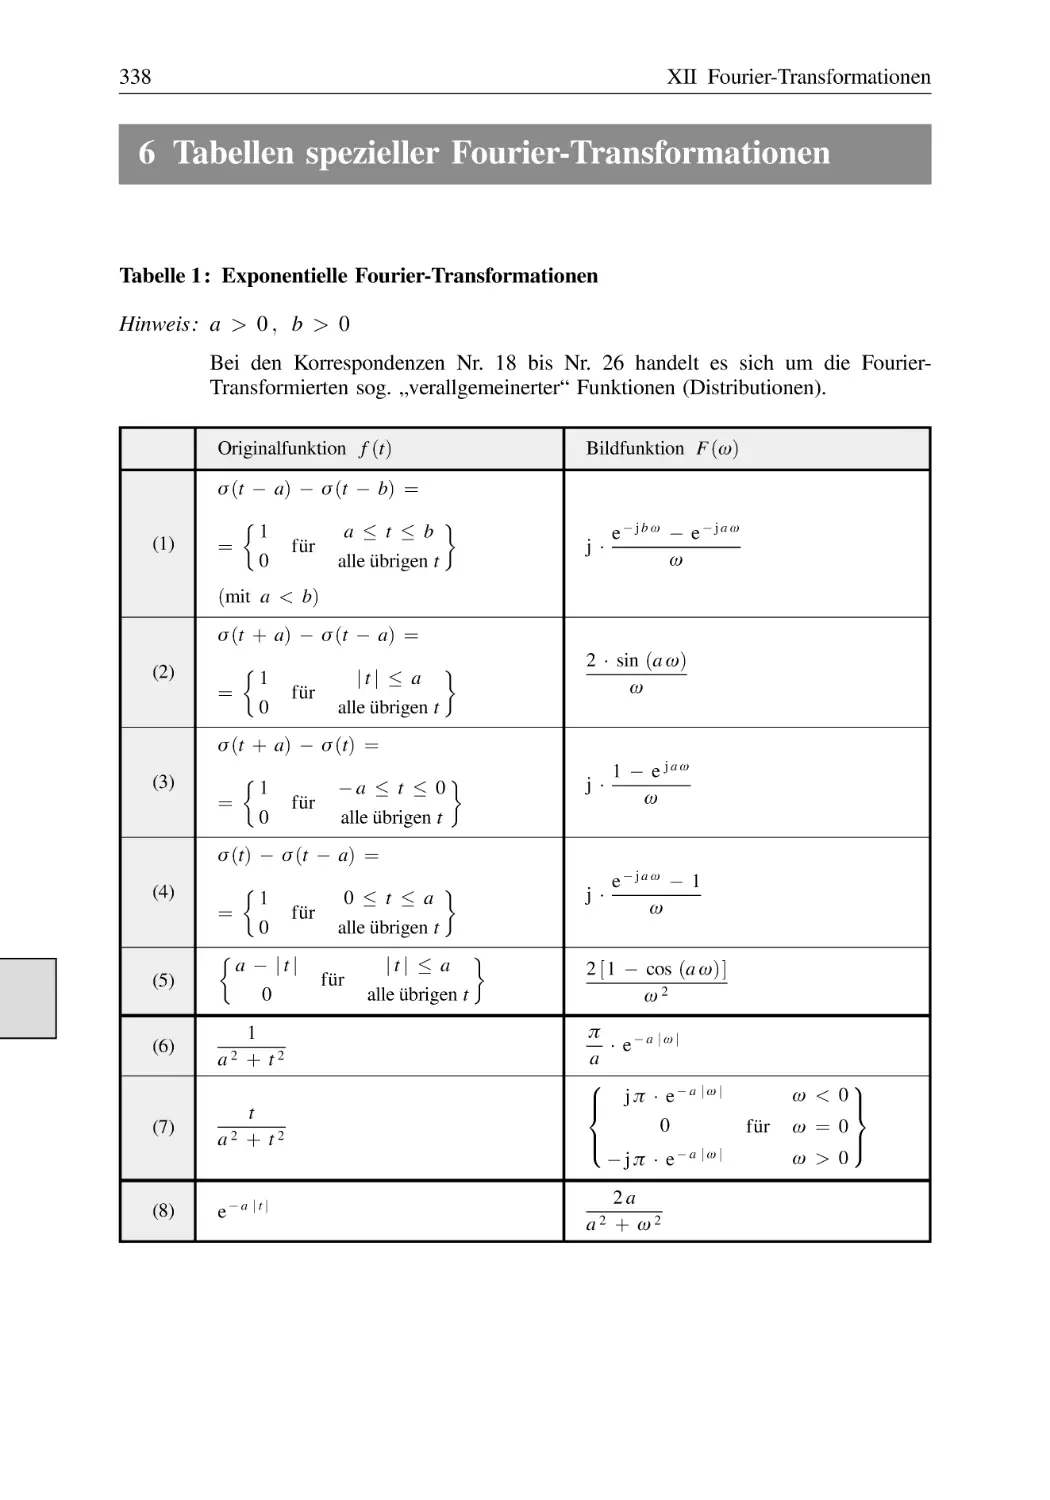 6 Tabellen spezieller Fourier-Transformationen